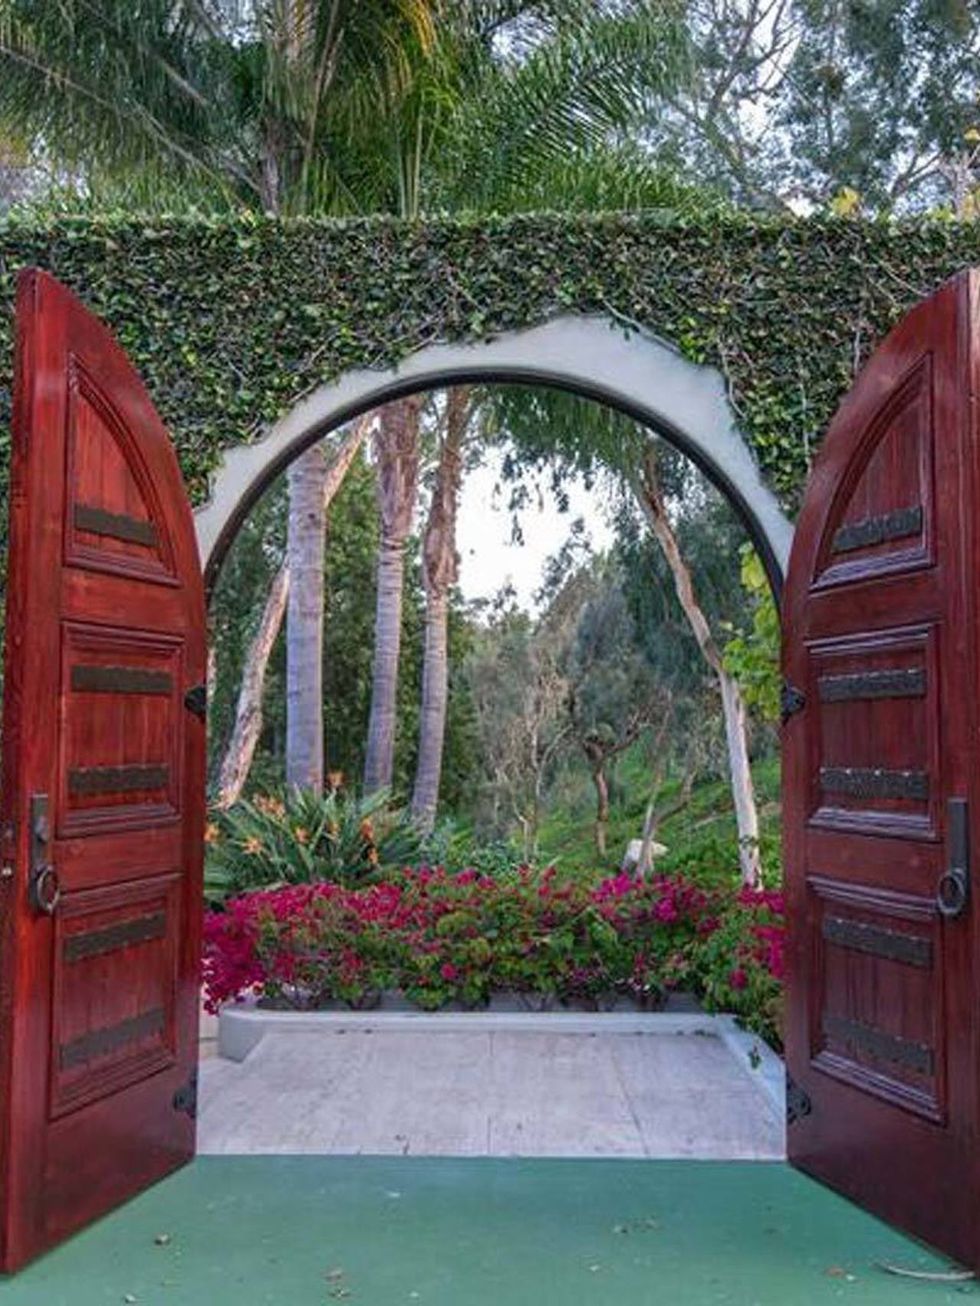 <p>La mansión cuenta con una entrada presidida por dos puertas de color escarlata y un muro cubierto por la naturaleza.</p>